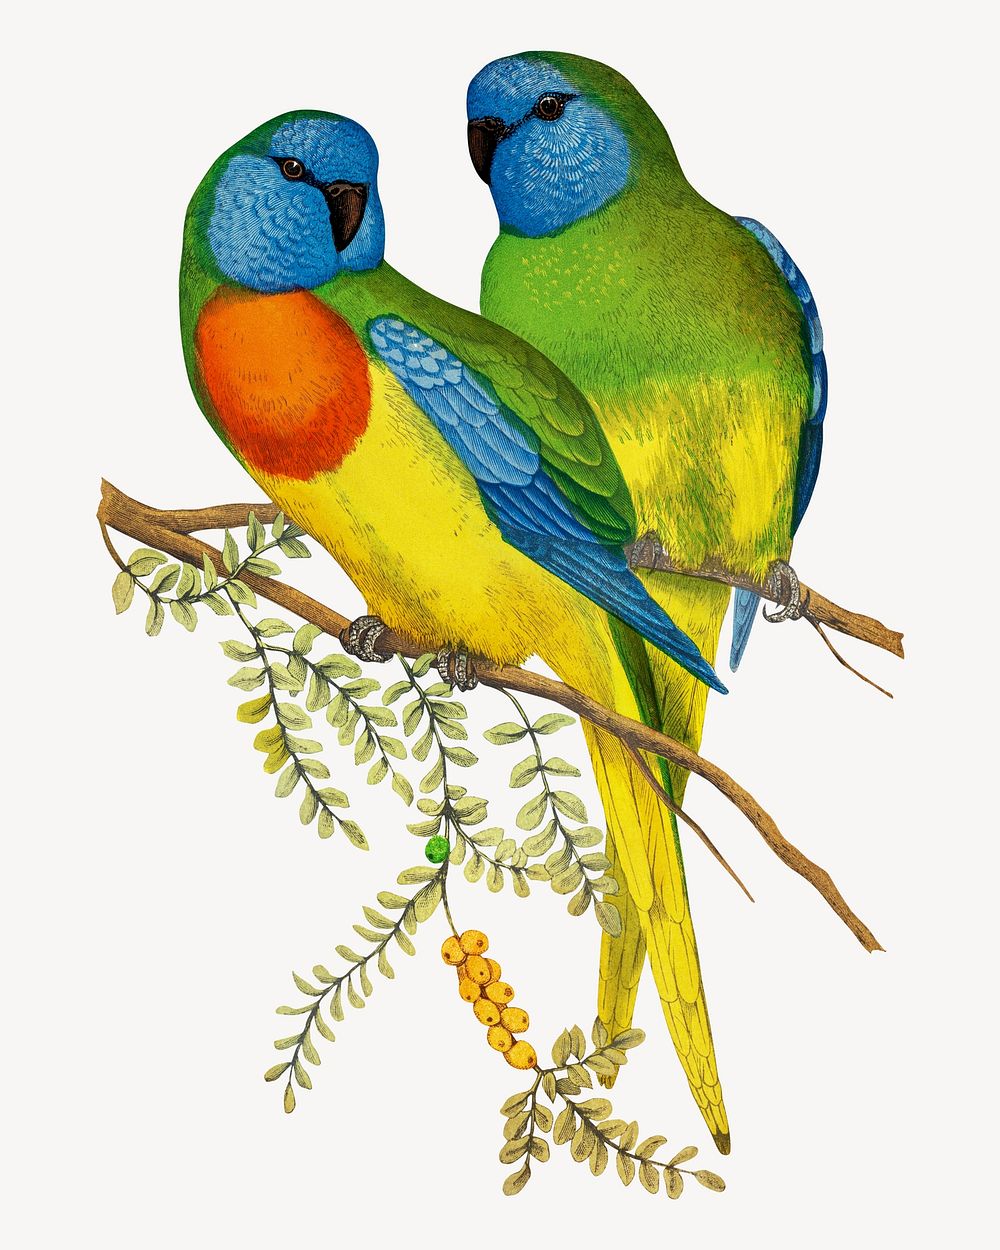 Splendid parakeet vintage bird illustration. Remixed by rawpixel.